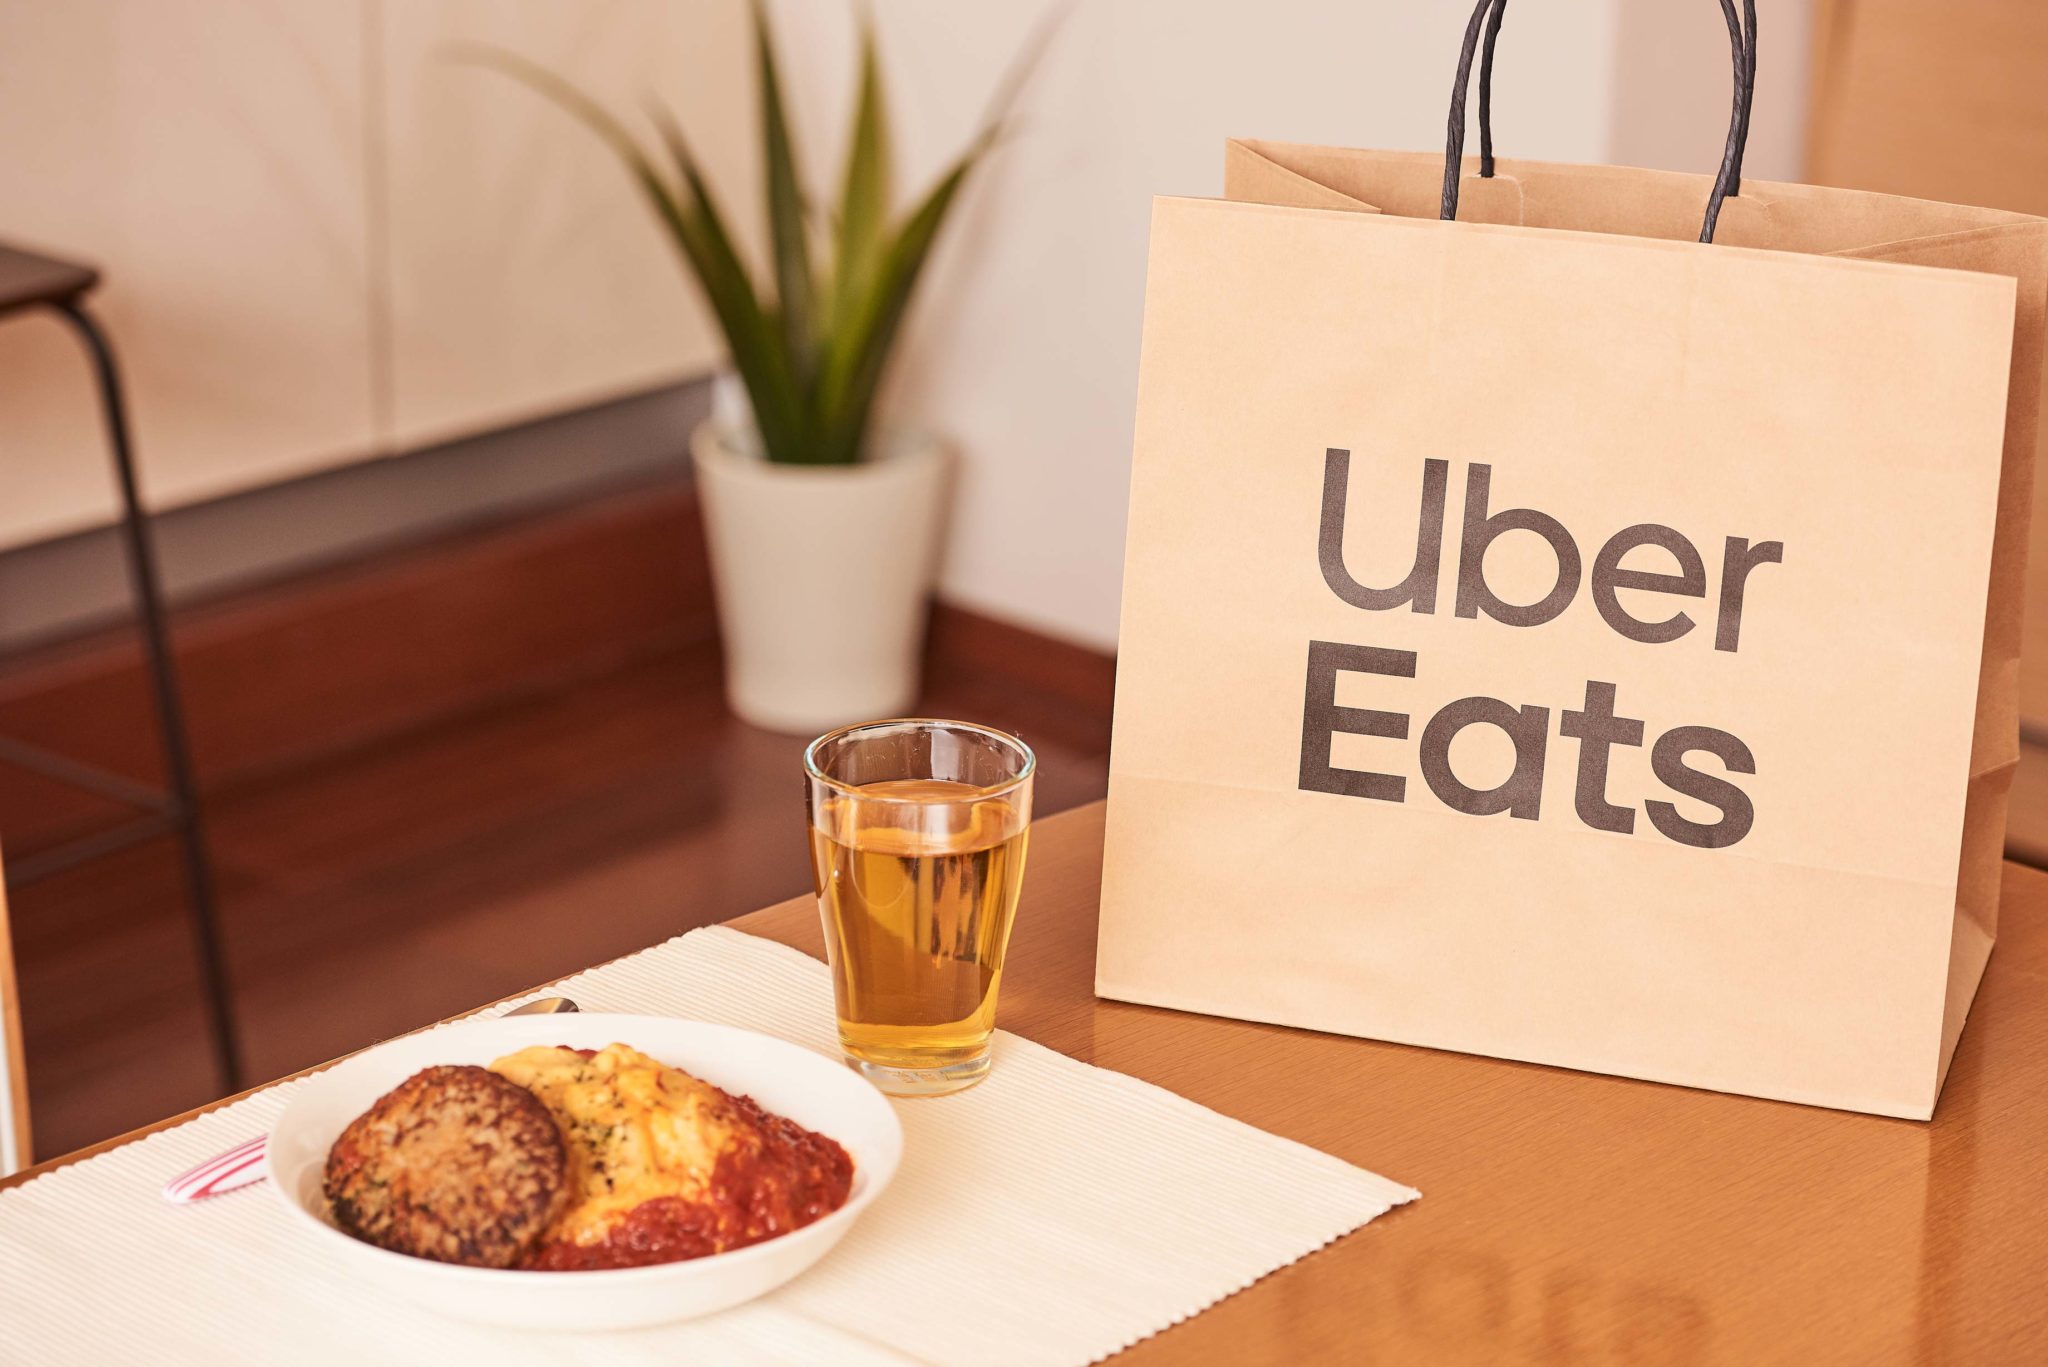 【大船】Uber Eats (ウーバーイーツ)が利用できるショップ一覧、初回限定クーポン